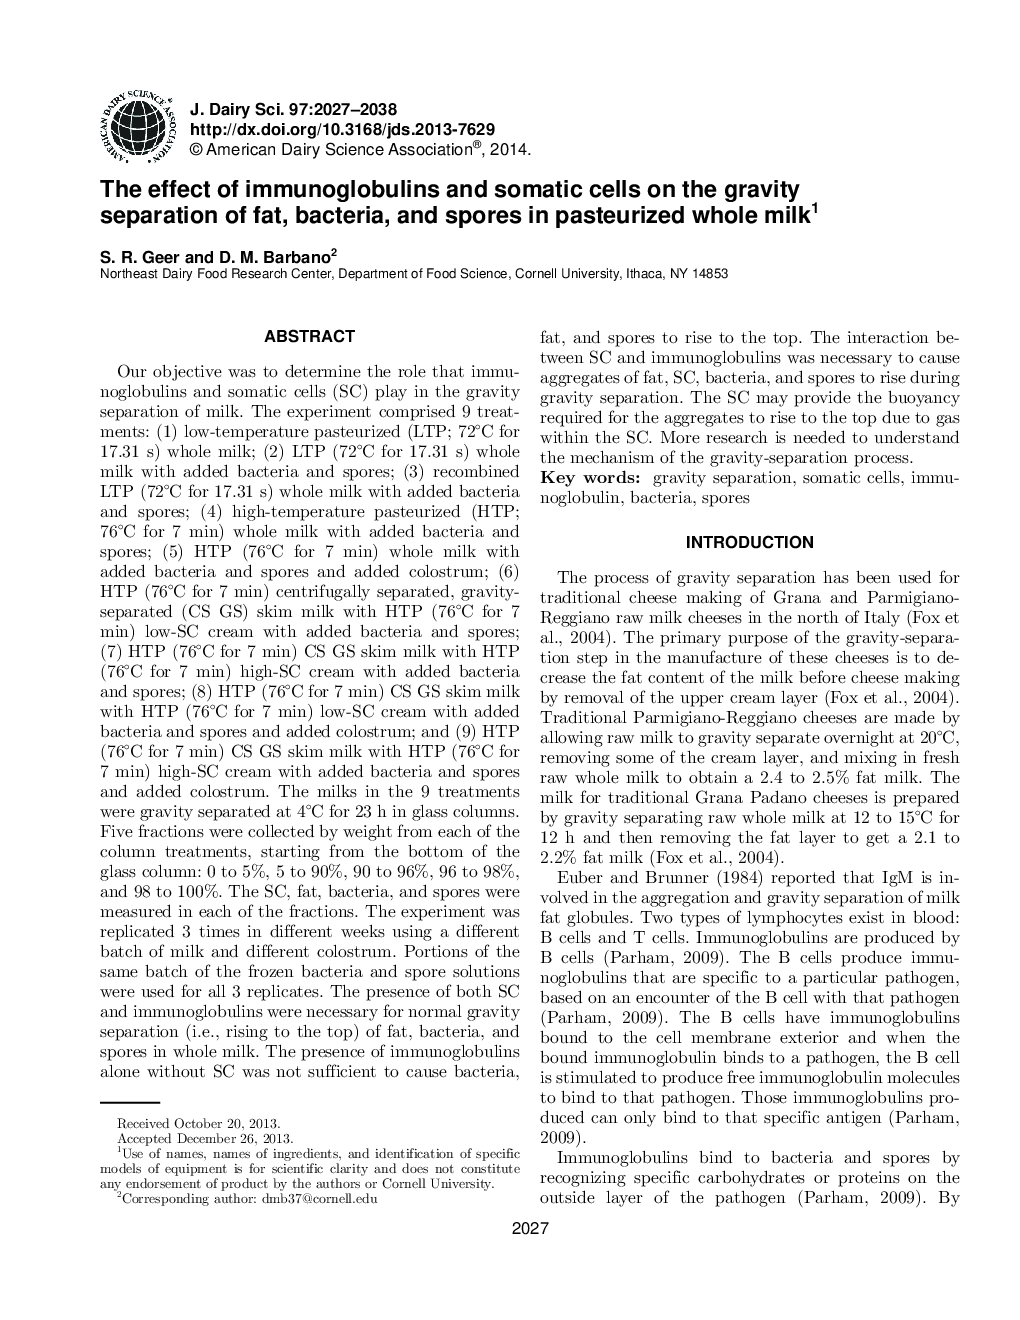 اثر ایمونوگلوبولین ها و سلول های سوماتیک بر جداسازی گرانروی چربی، باکتری و اسپور در شیر کامل پاستوریزه 